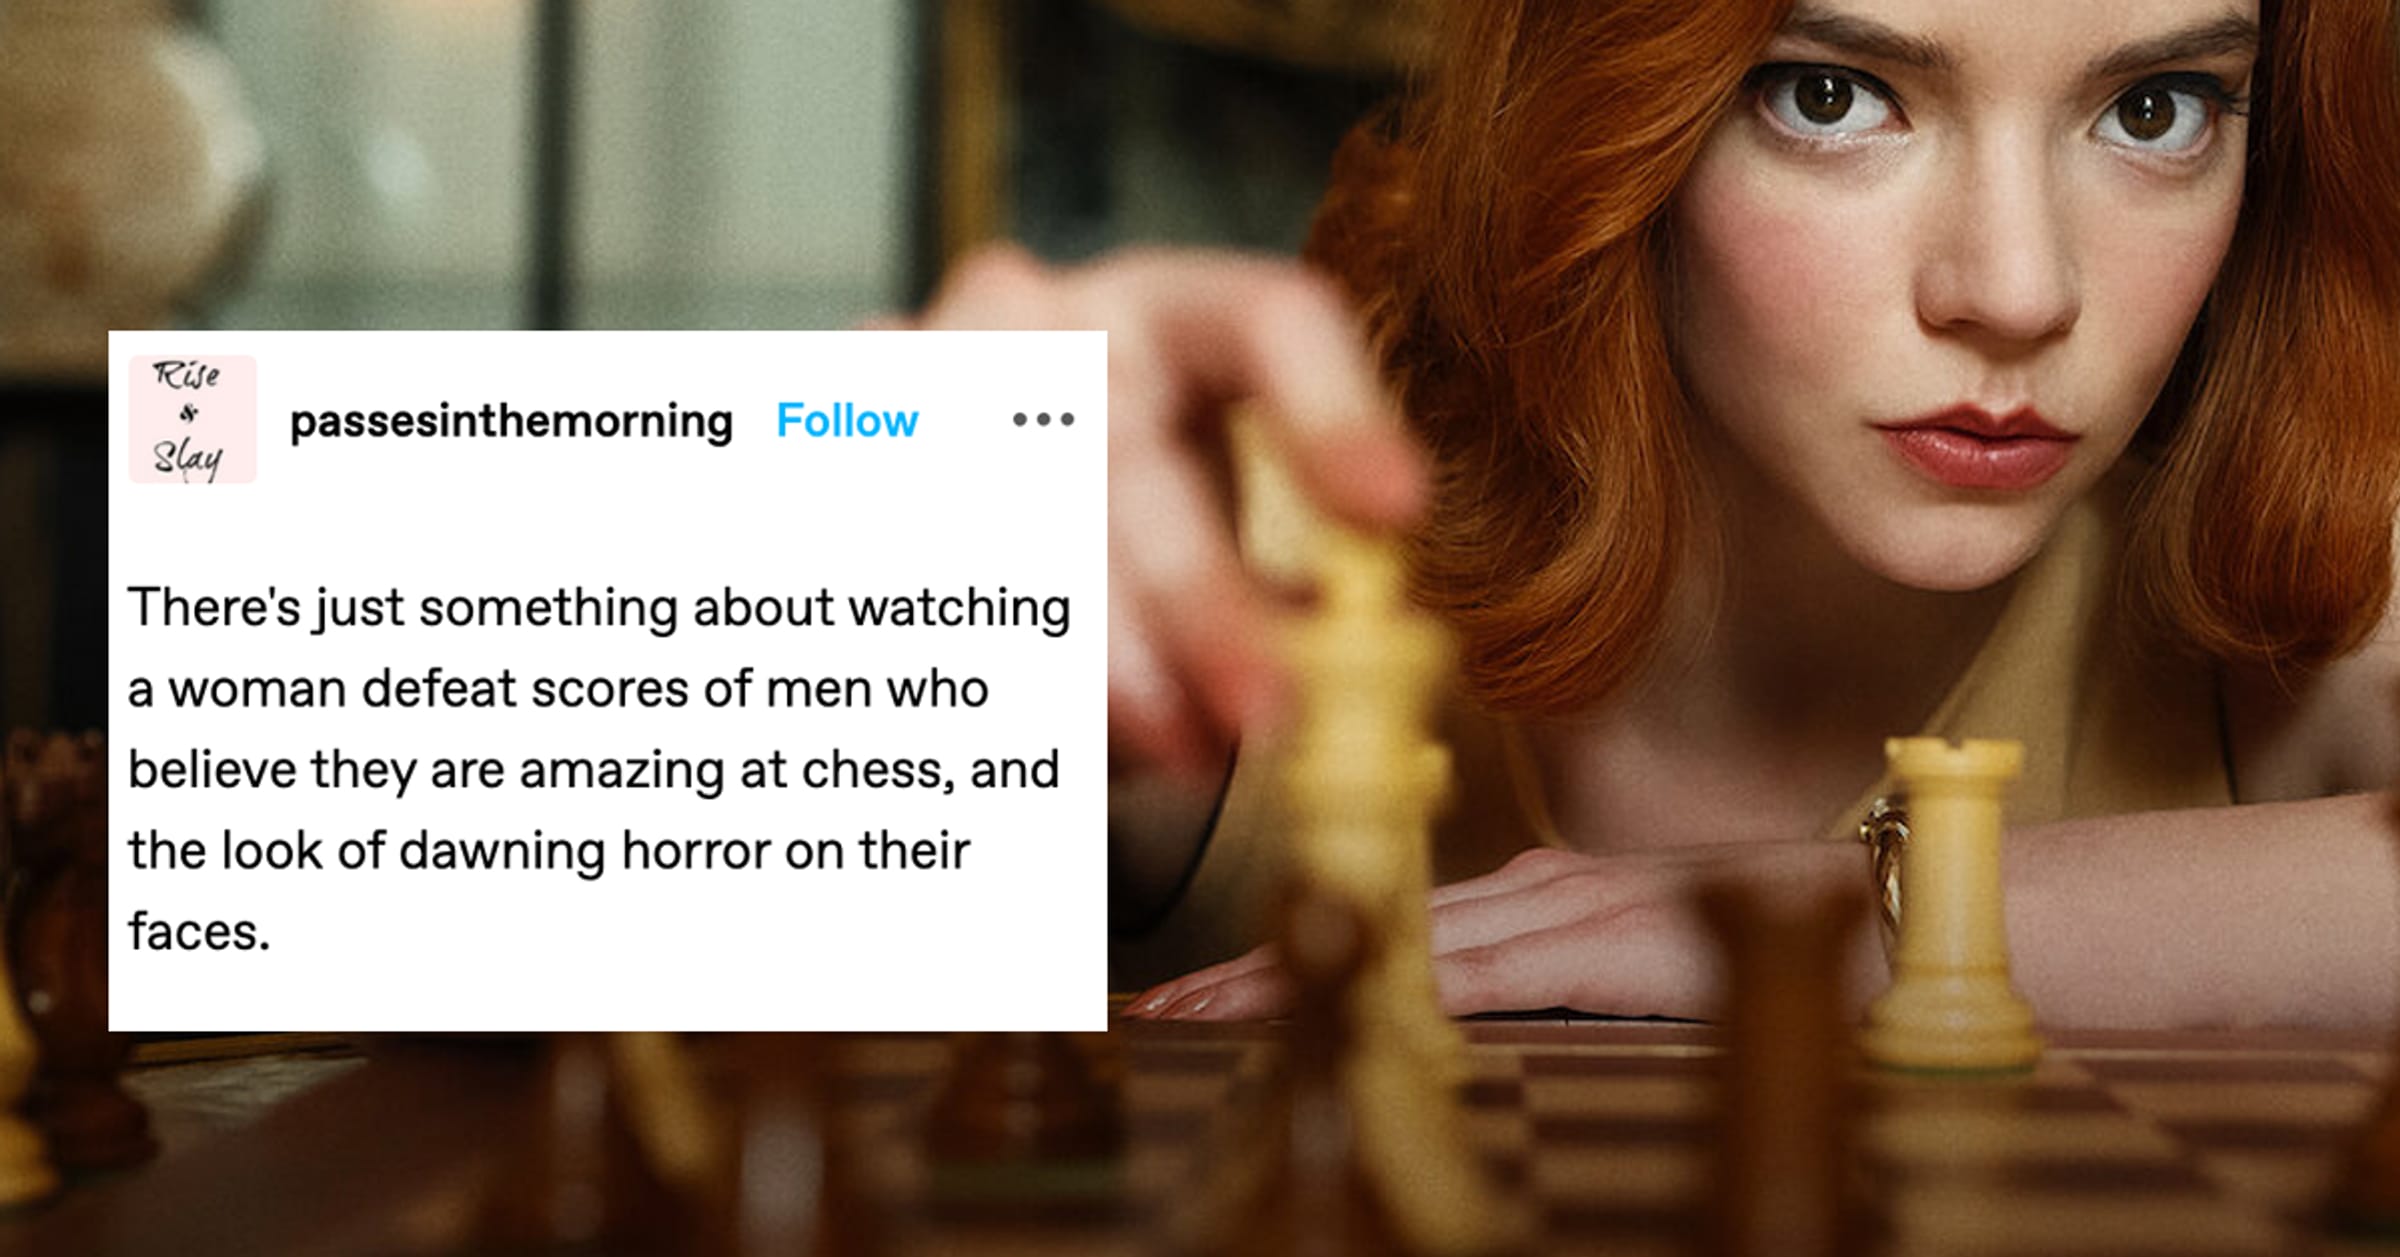 The Queen's Gambit On Netflix Fan Reactions